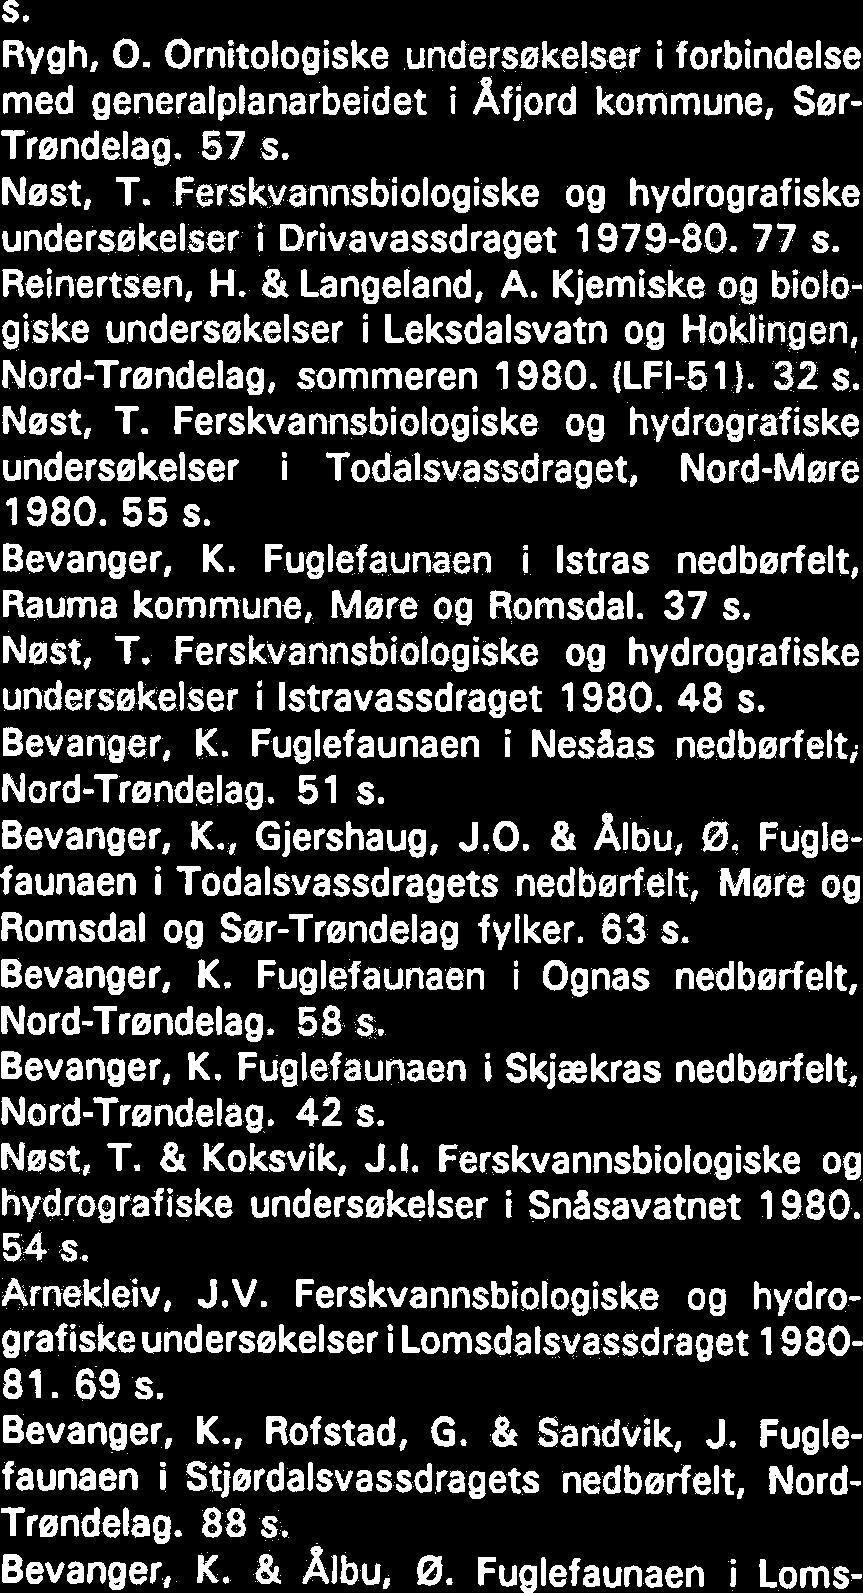 Ferskvannsbiologiske og hydrografiske undersekelser i Istravassdraget 1980. 48 s. Bevanger, K. Fuglefaunaen i Nesaas nedbedelti Nord-Trendelag. 51 s. Bevanger, K., Gjershaug, J.O. & Albu, 0.